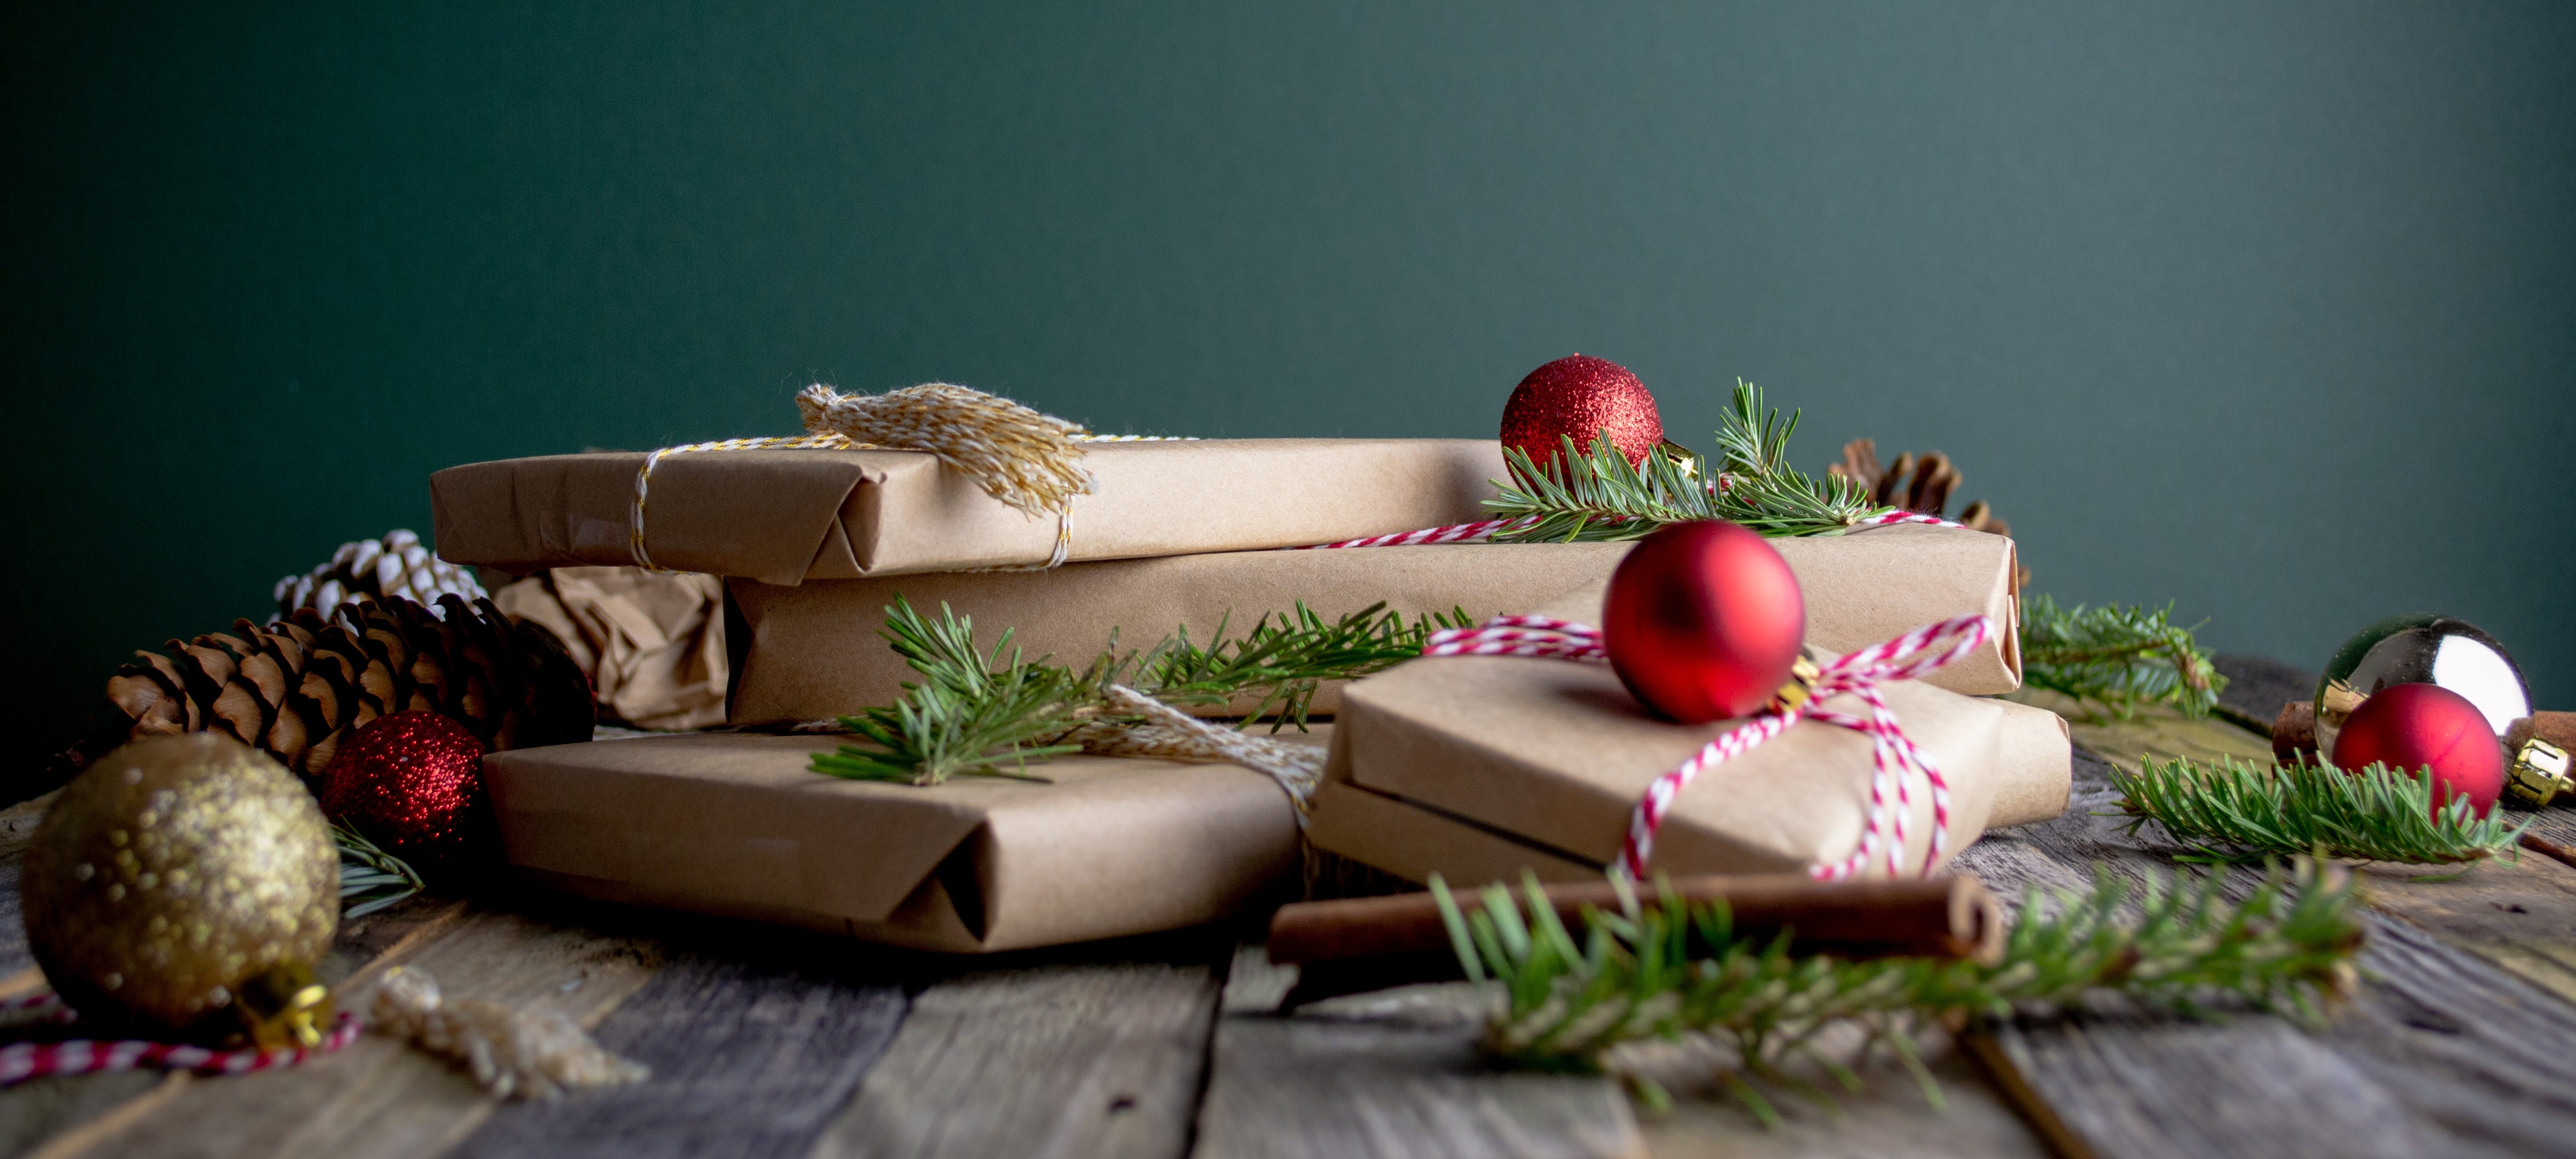 Cadeaux, repas, déco : nos conseils pour un Noël éco-responsable